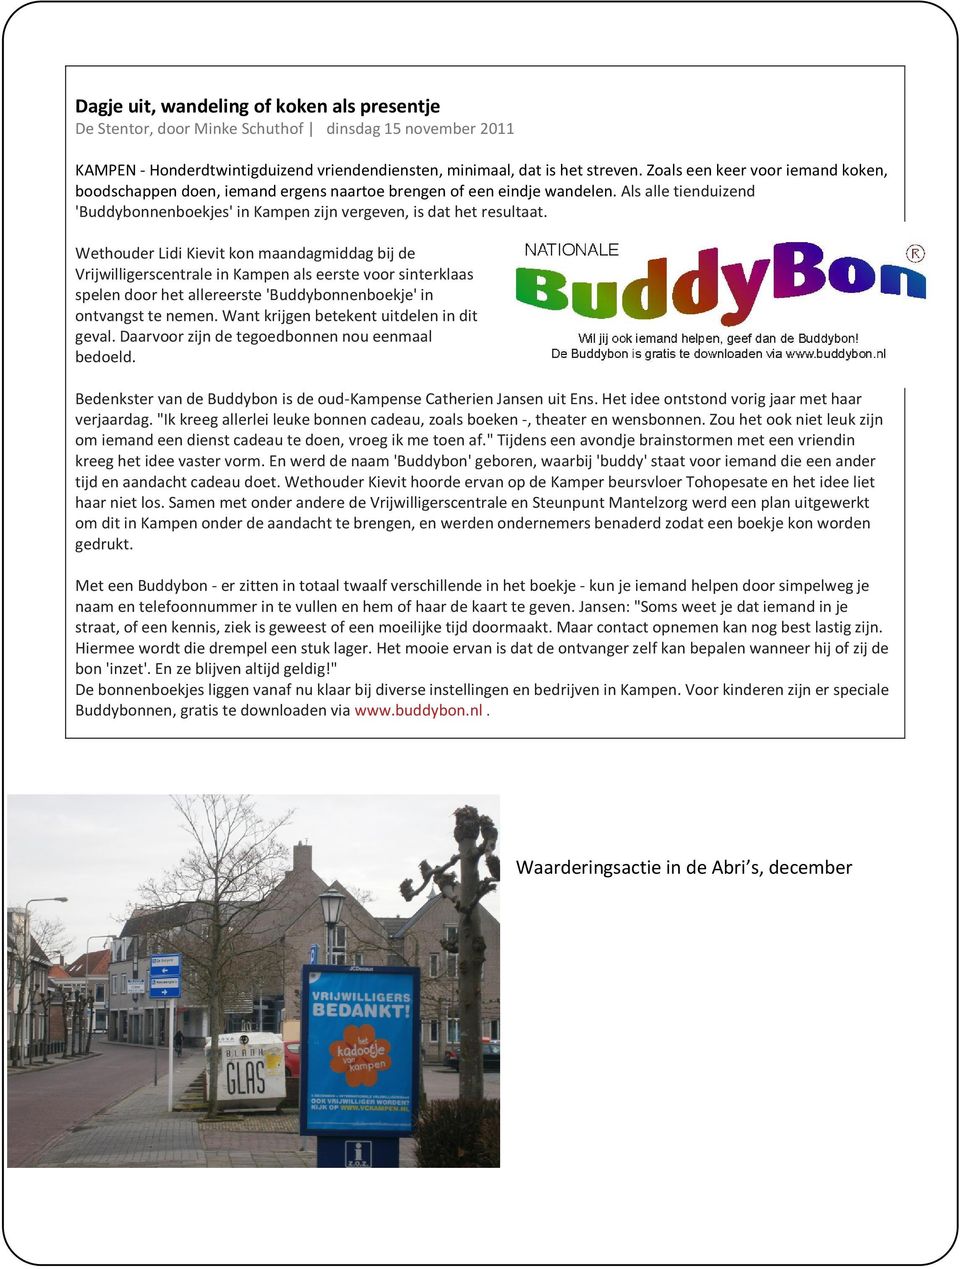 Wethouder Lidi Kievit kon maandagmiddag bij de Vrijwilligerscentrale in Kampen als eerste voor sinterklaas spelen door het allereerste 'Buddybonnenboekje' in ontvangst te nemen.